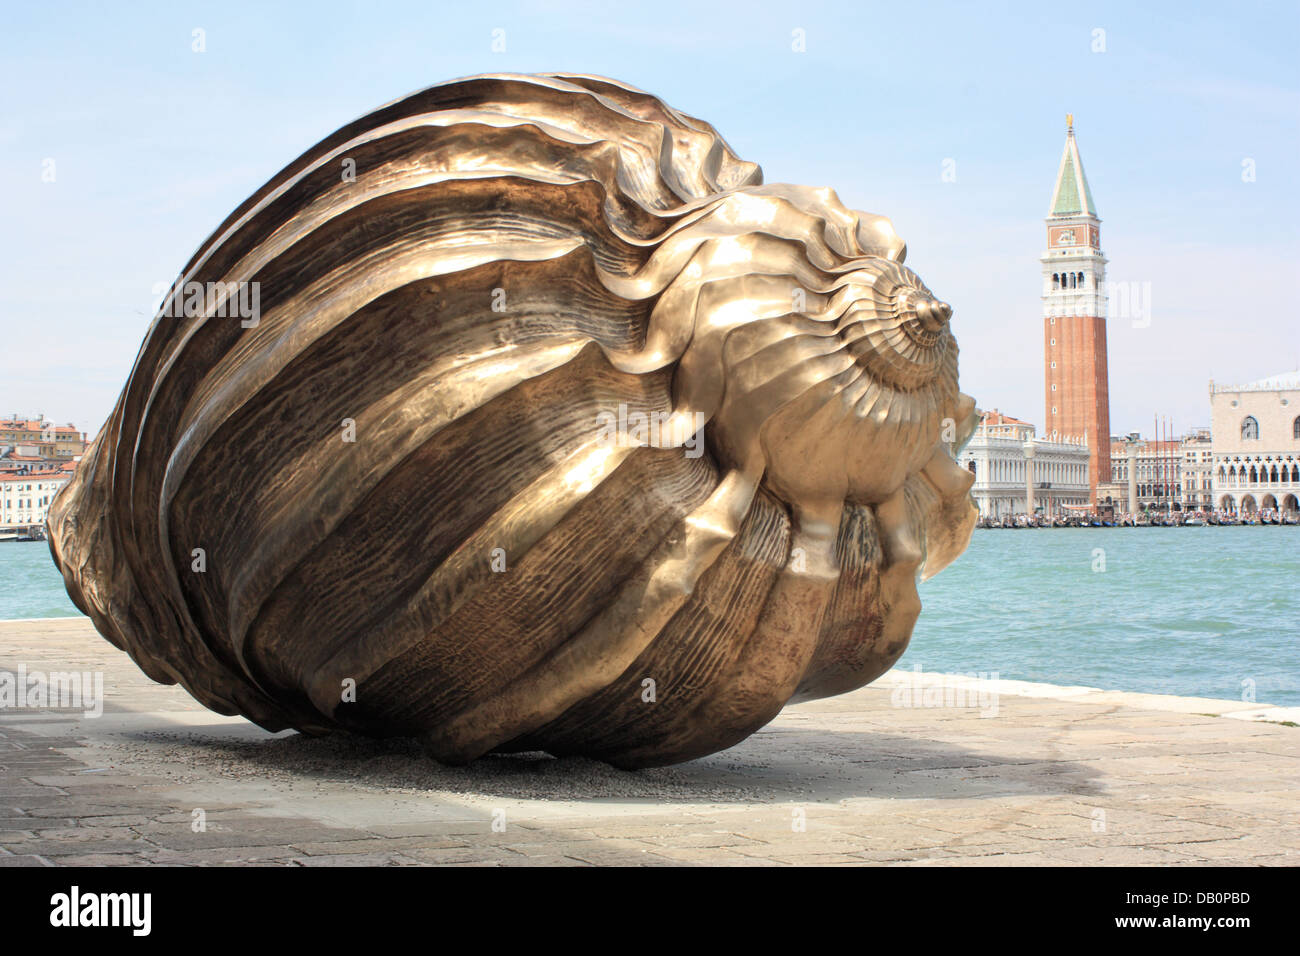 Exposition d'art, La Biennale di Venezia 2013 - spirale de la Galaxie, un coquillage en bronze d'art de l'artiste britannique Marc Quinn Banque D'Images